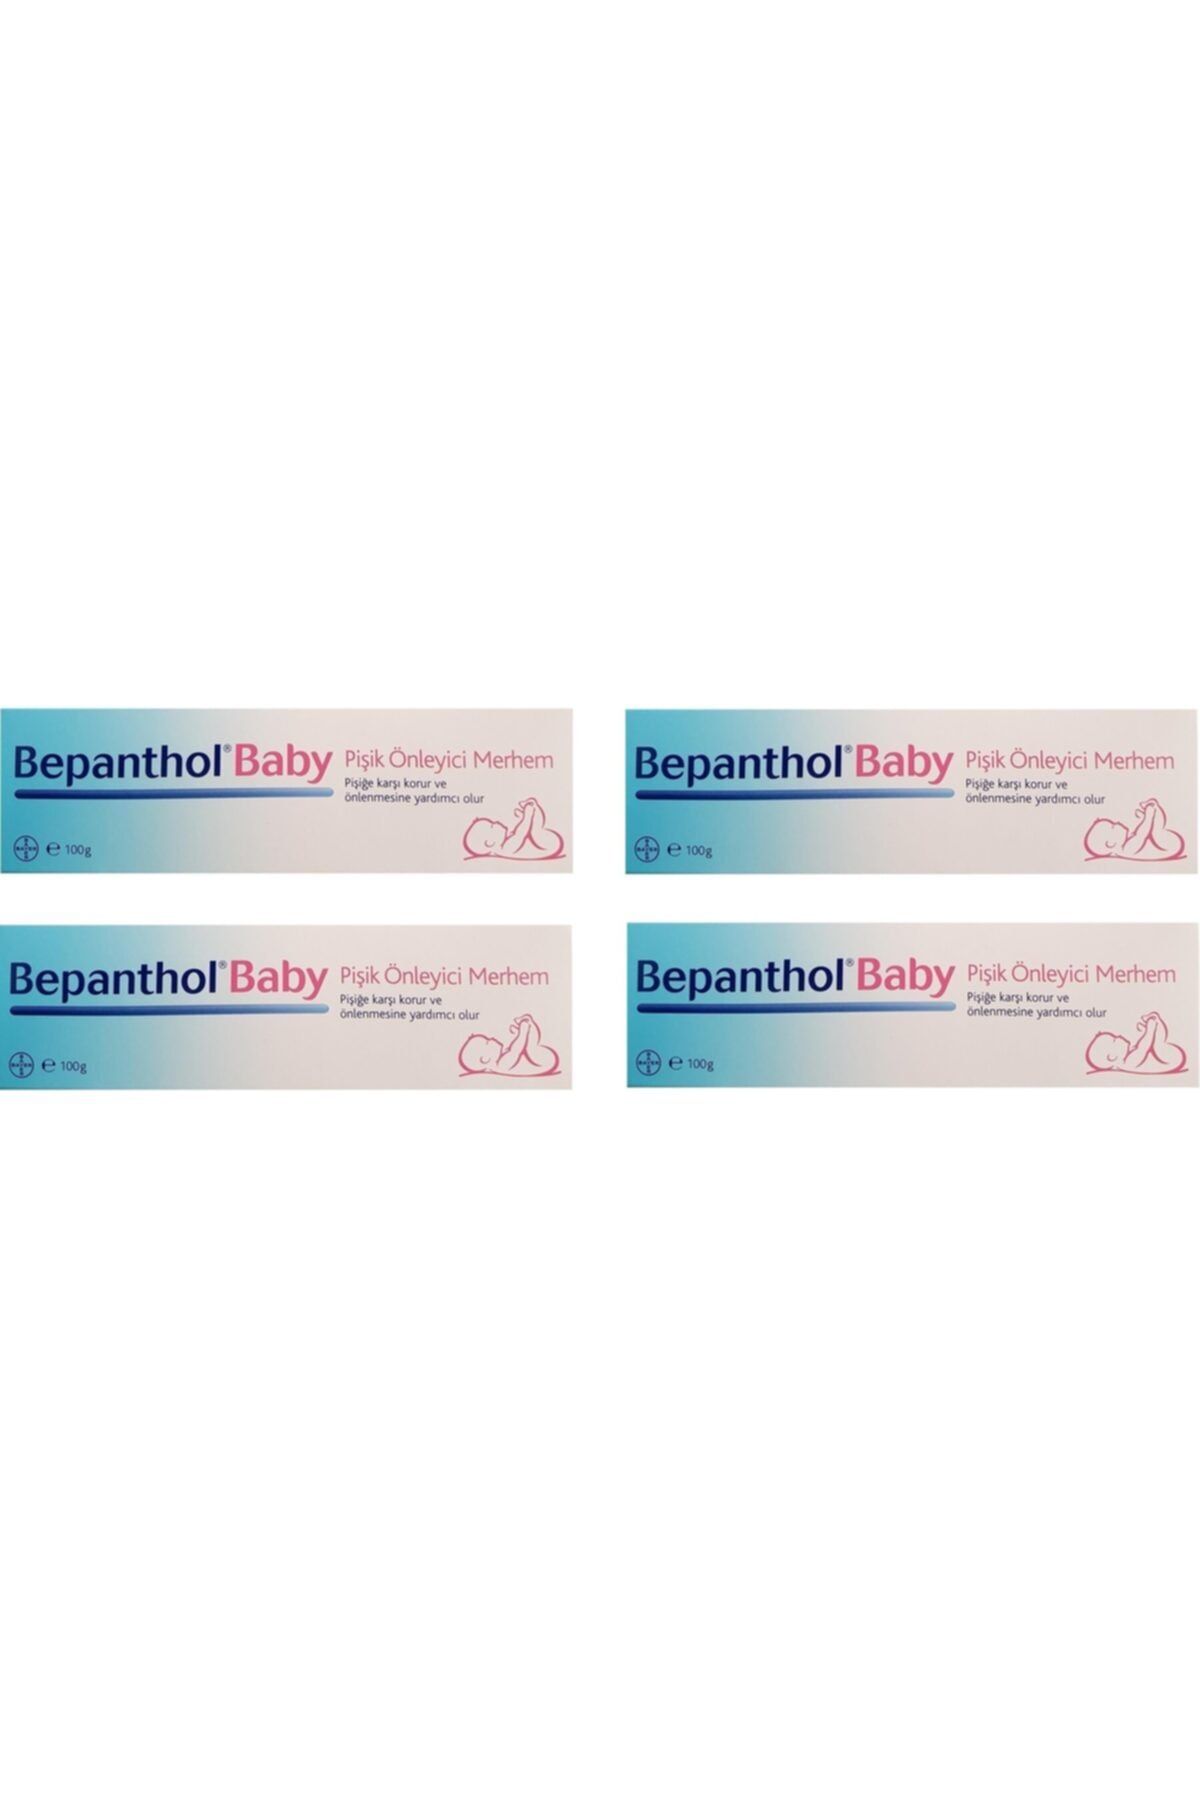 Bepanthol Baby Pişik Önleyici Merhem 100 Gr-4 Adet Skt:12/2021